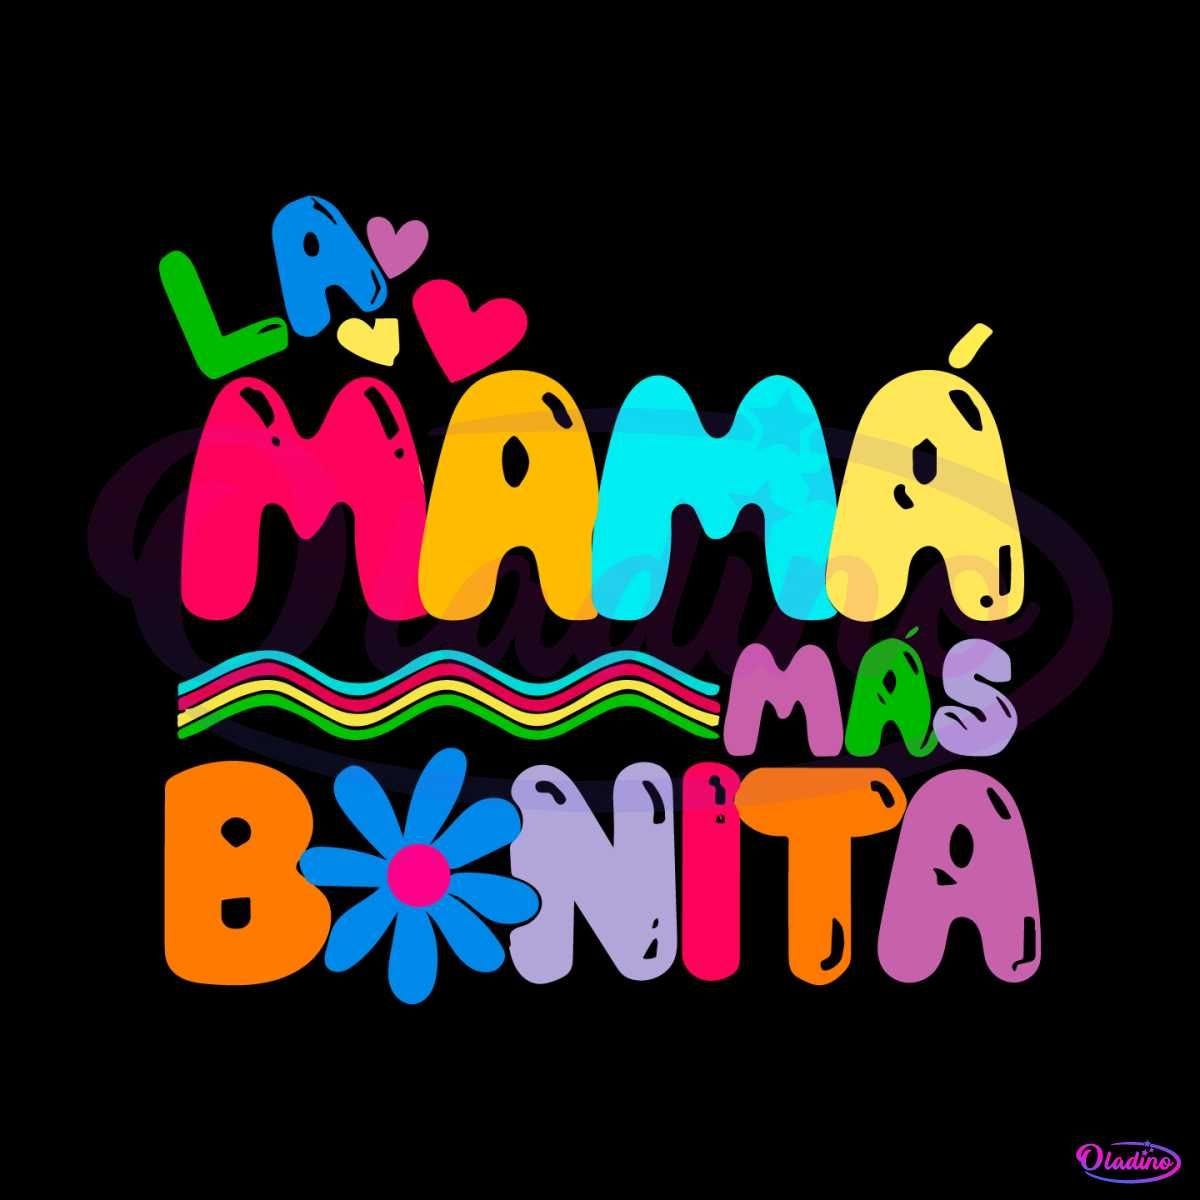 La Mama Mas Bonita Mañana será bonito Karol G SVG Cutting Files